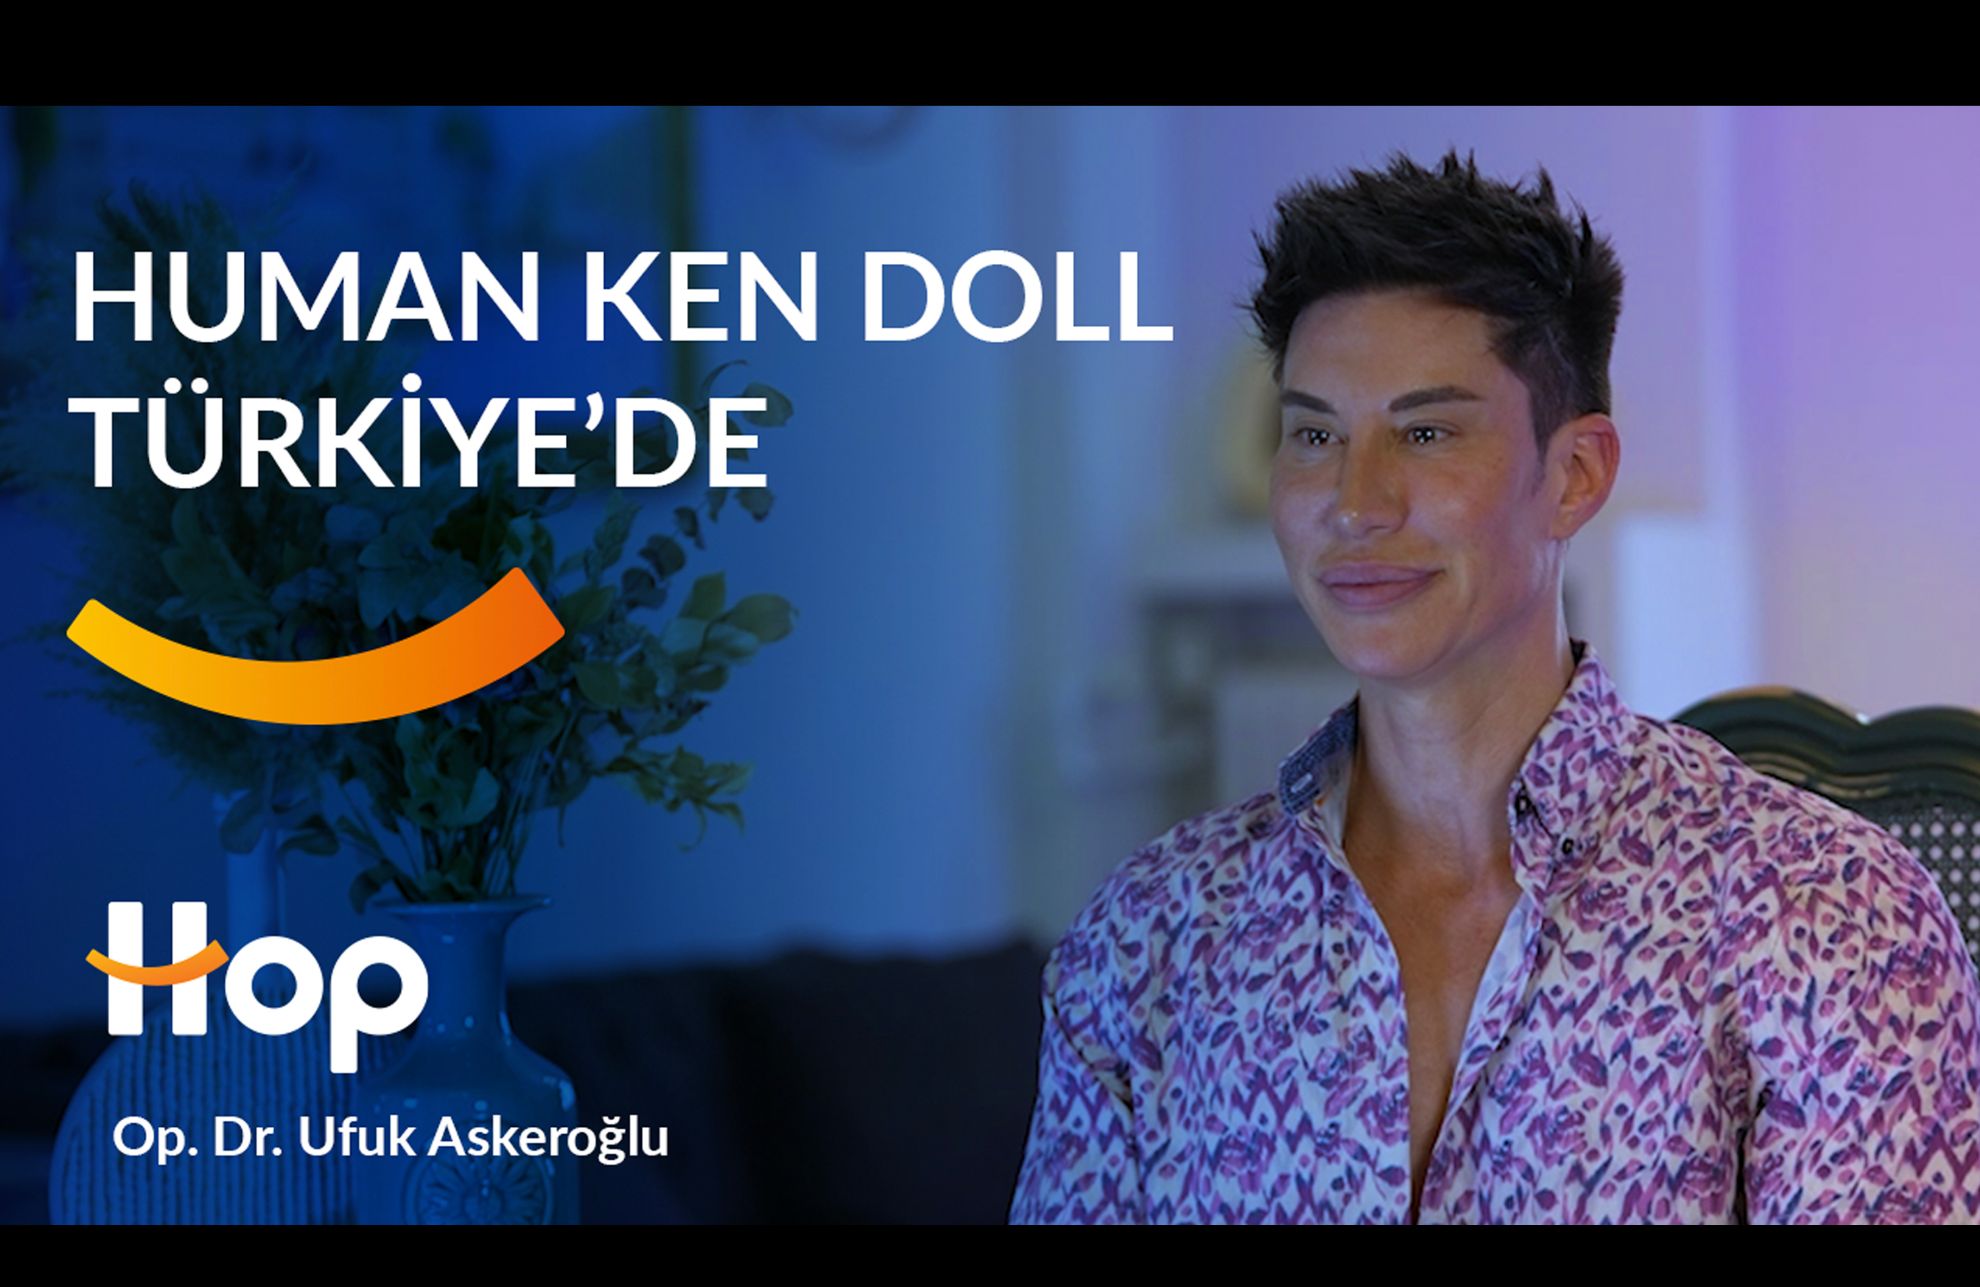 Human Ken Doll Arrives in Turkey